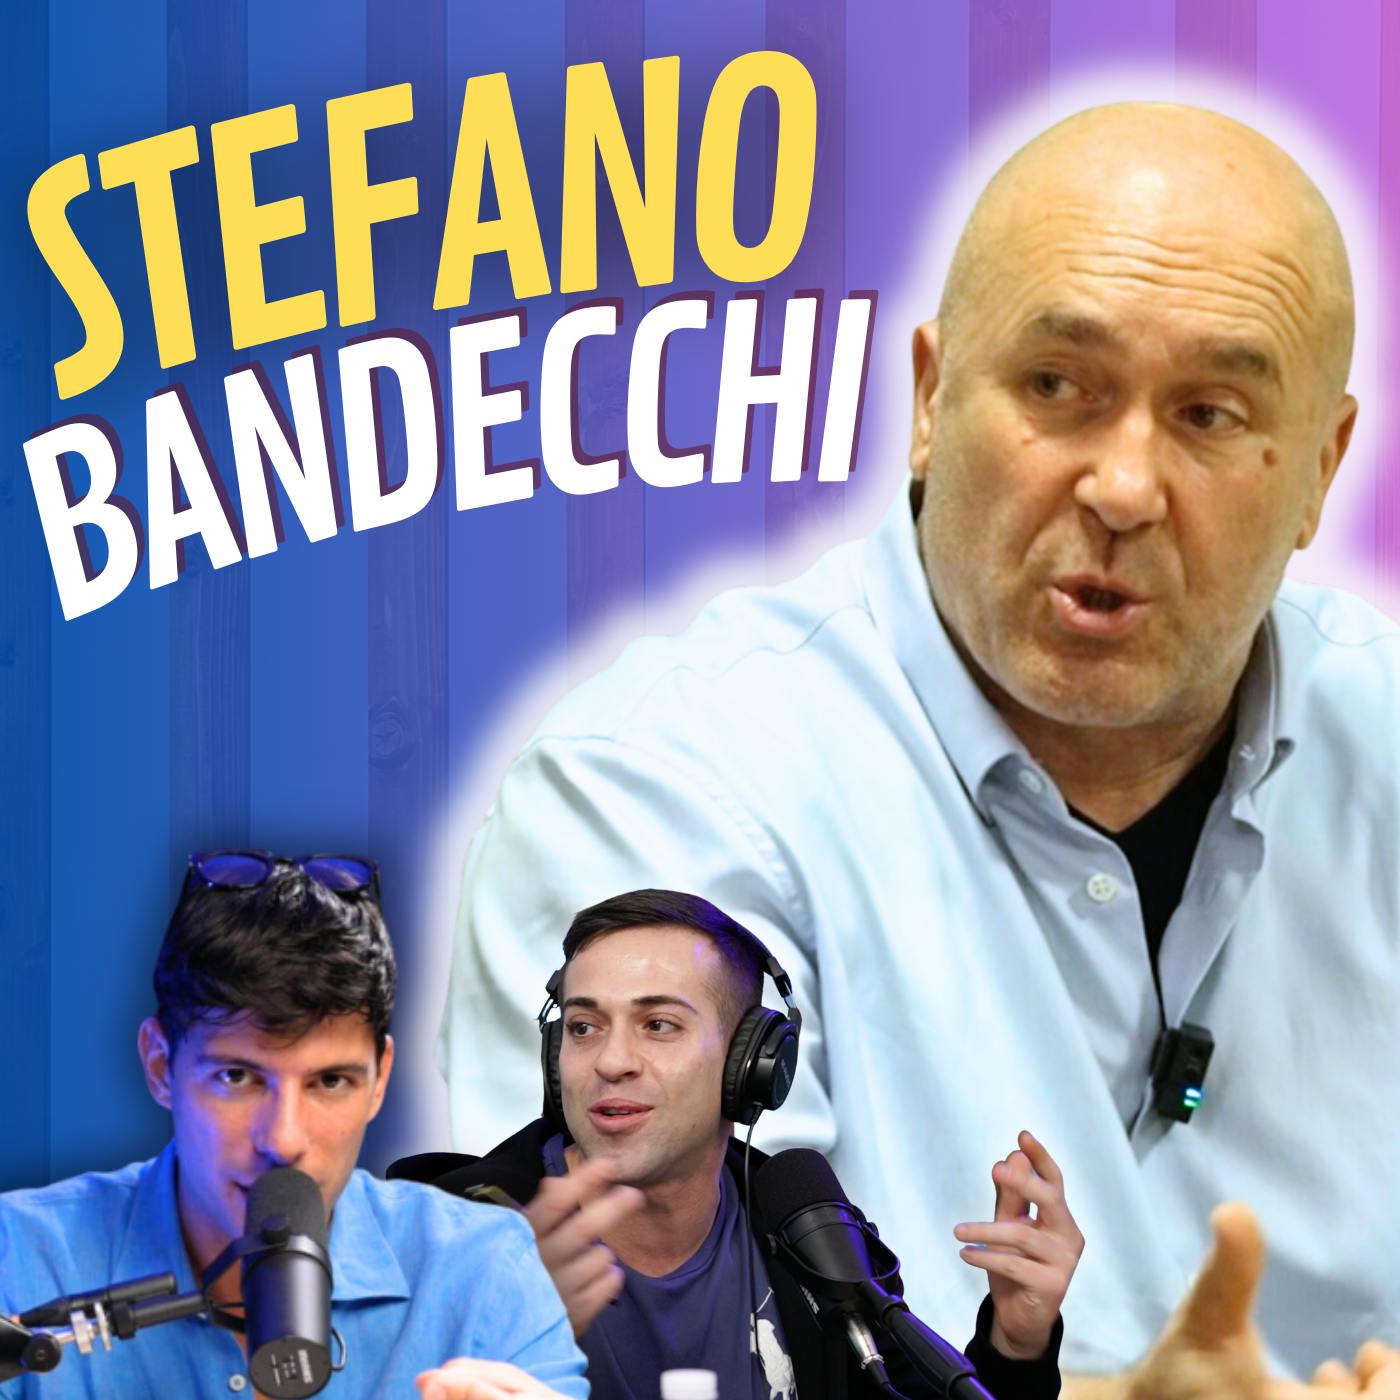 "IMPRENDITORE, SINDACO, POLITICO, ANTI FASCISTA" - Con Stefano Bandecchi